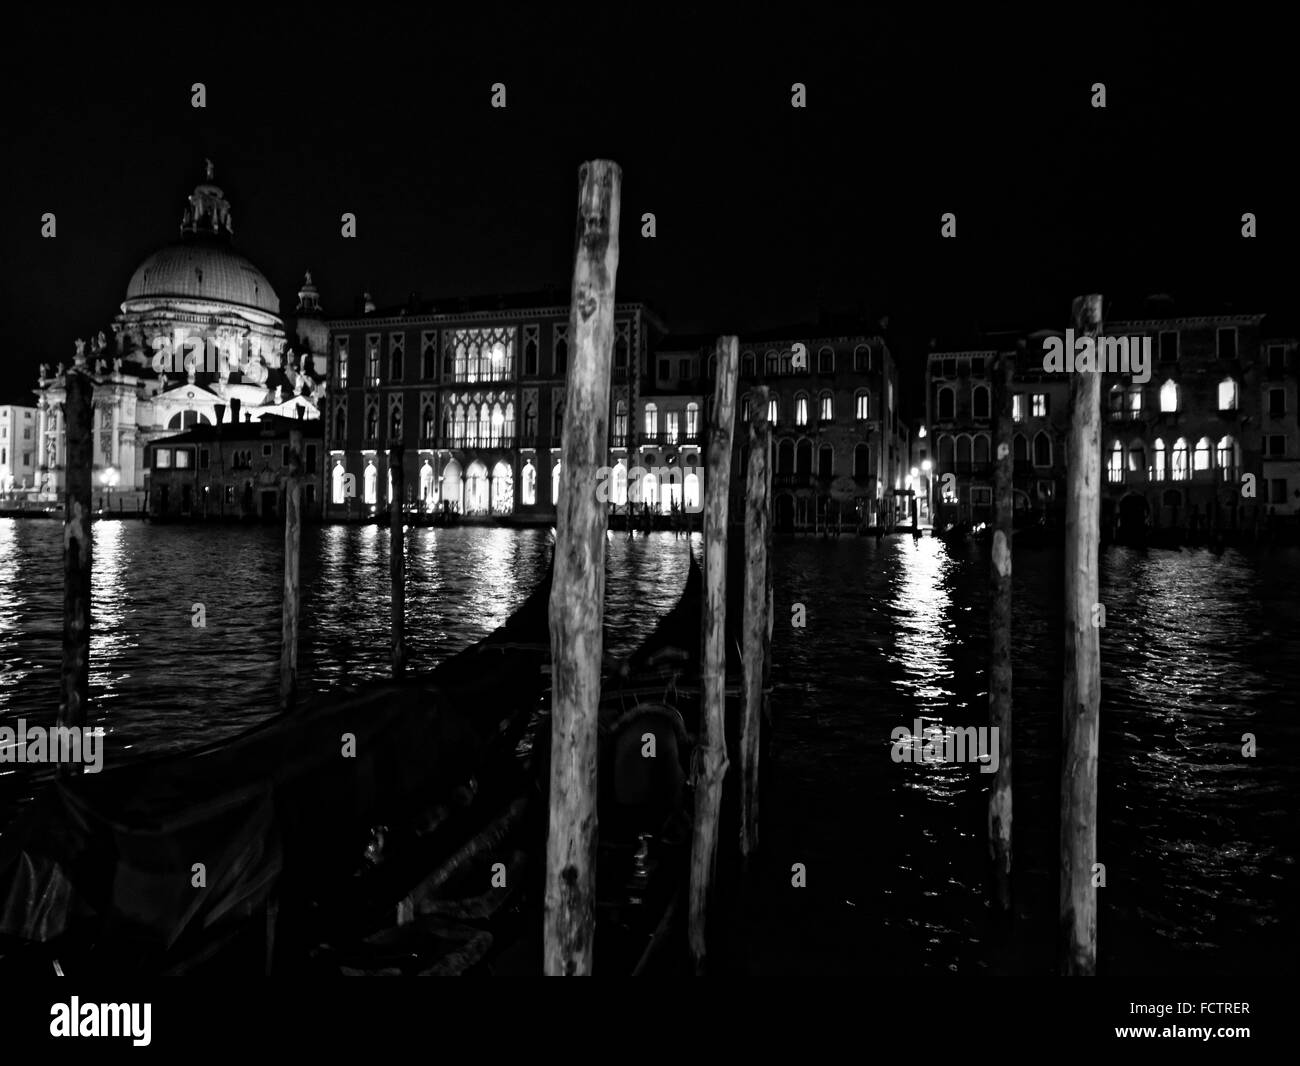 Venice at night - Italy Stock Photo